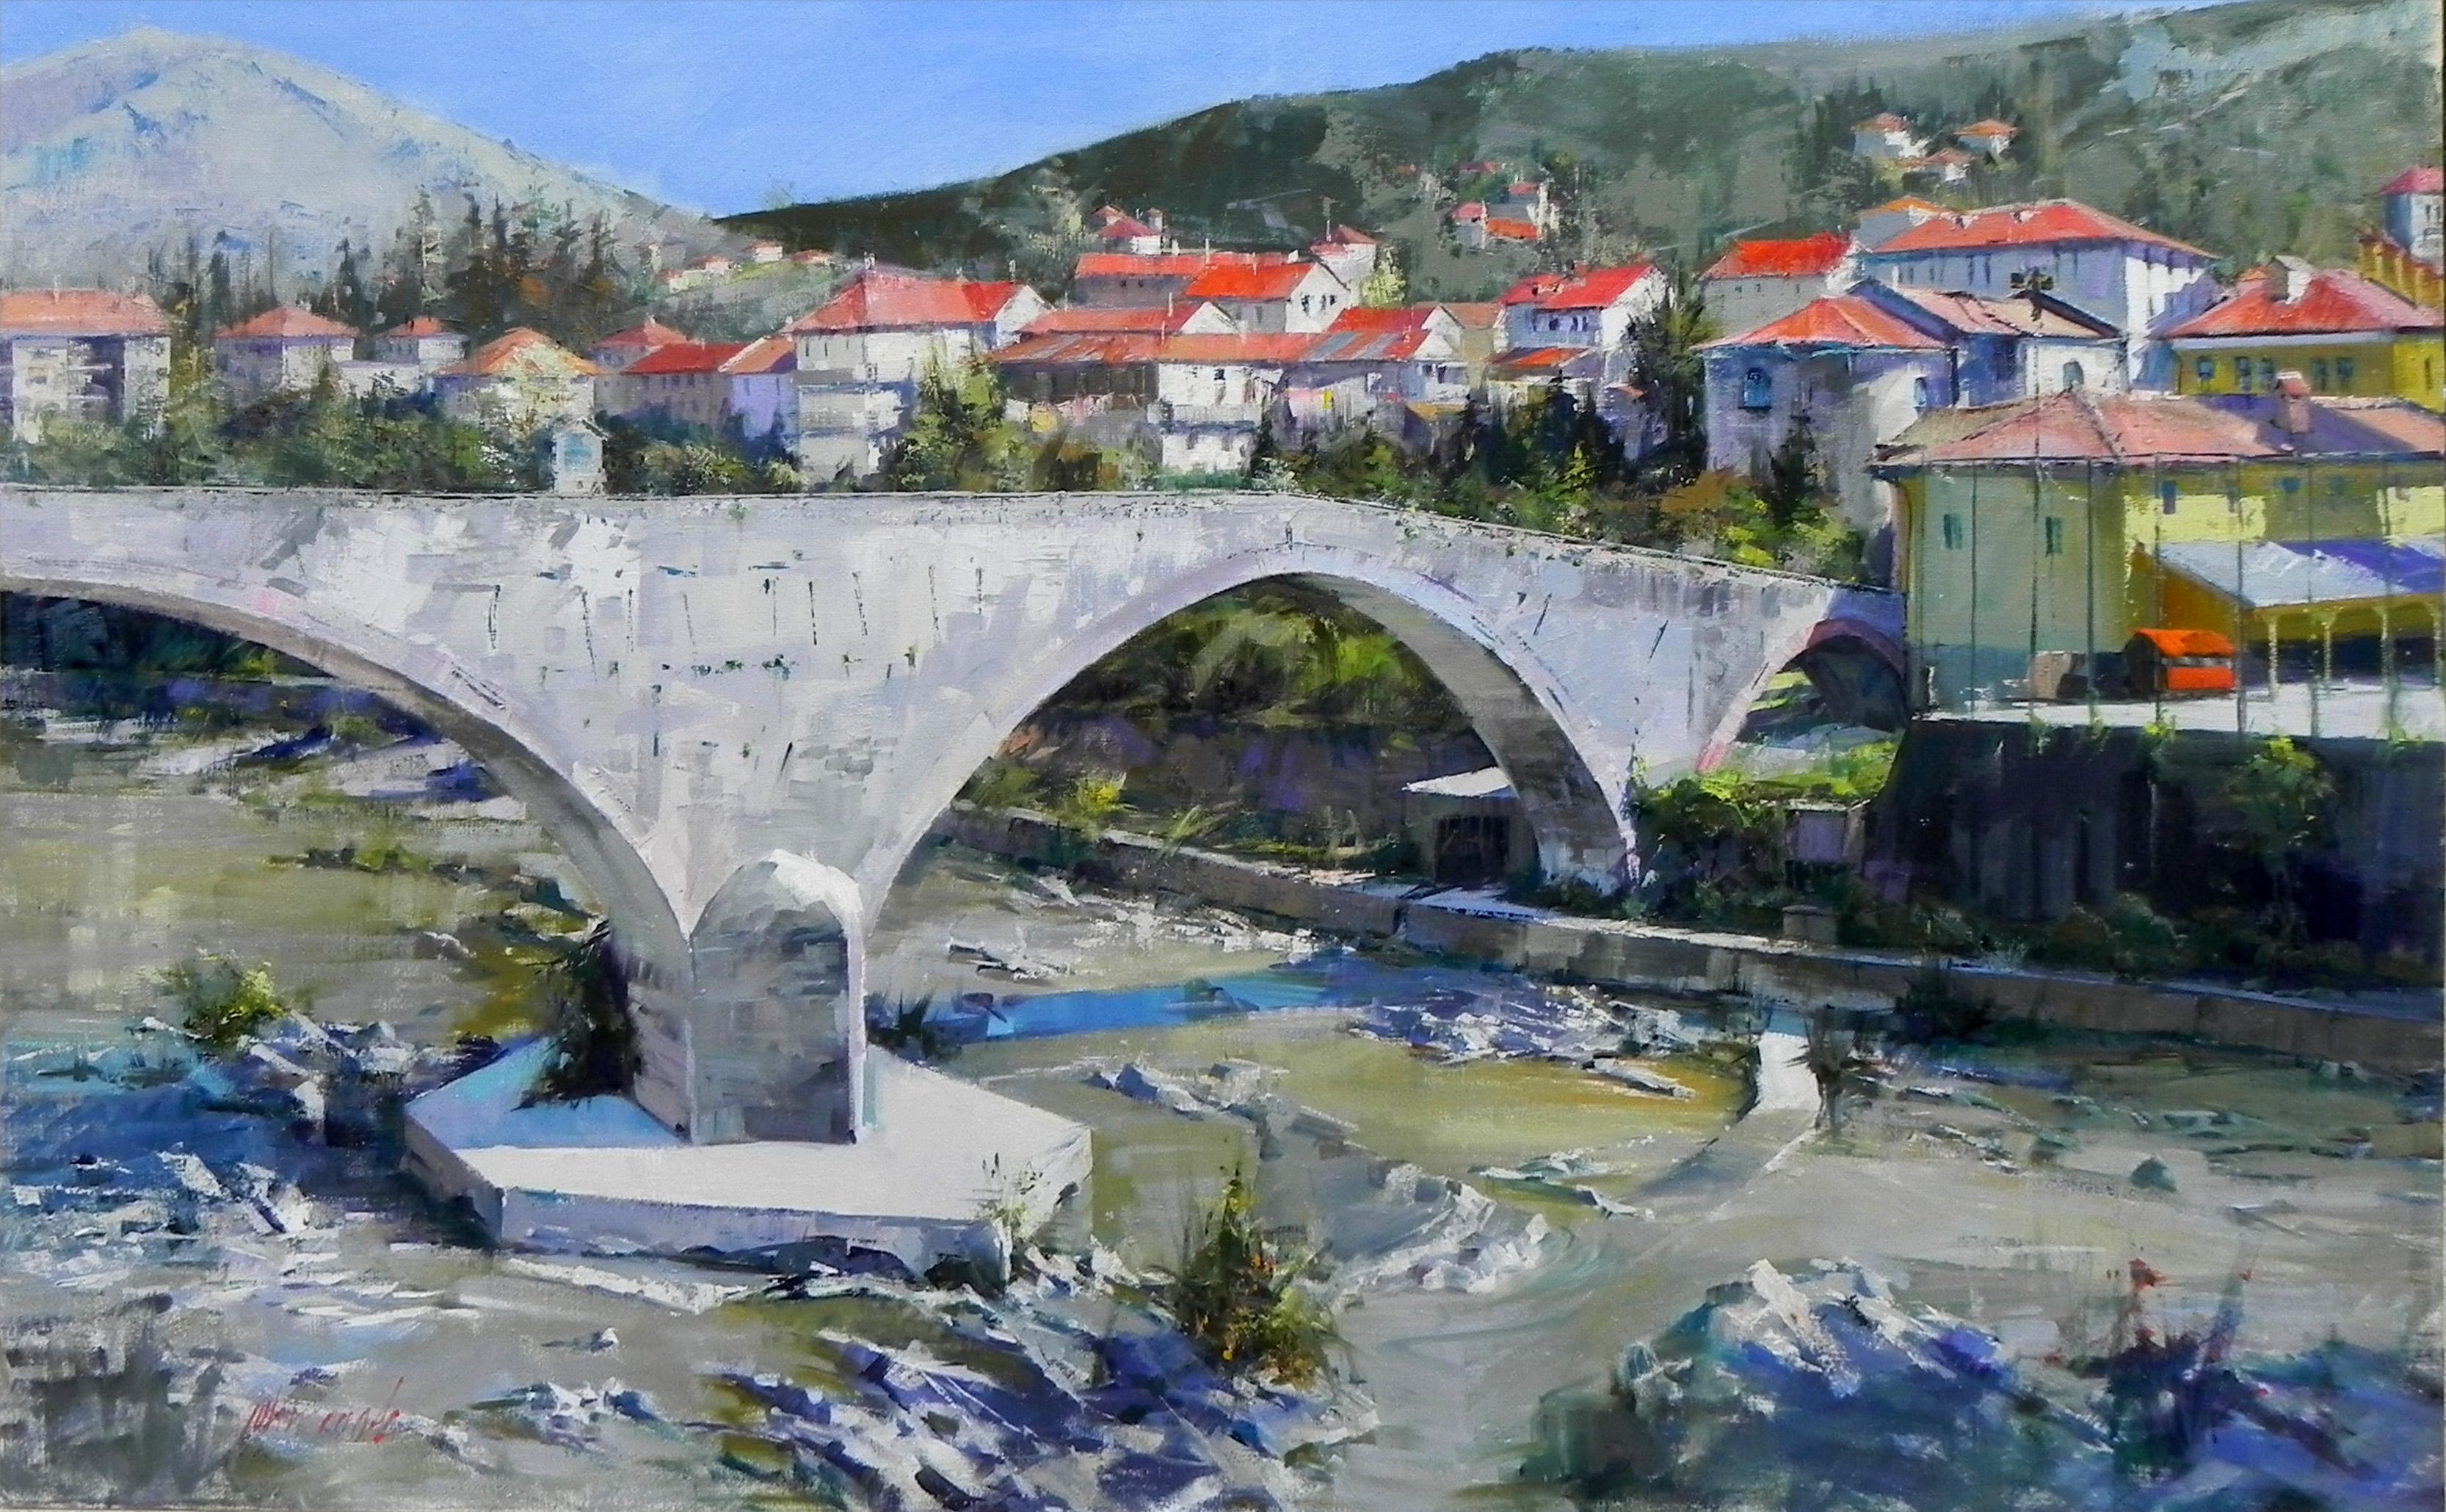 "Pont médiéval à Ronco, Italie" est une huile sur toile originale qui mesure 48x72 pouces. Cook montre sa passion pour la capture de la beauté naturelle dans ce paysage italien d'un pont médiéval. Cette peinture impressionniste représente un pont